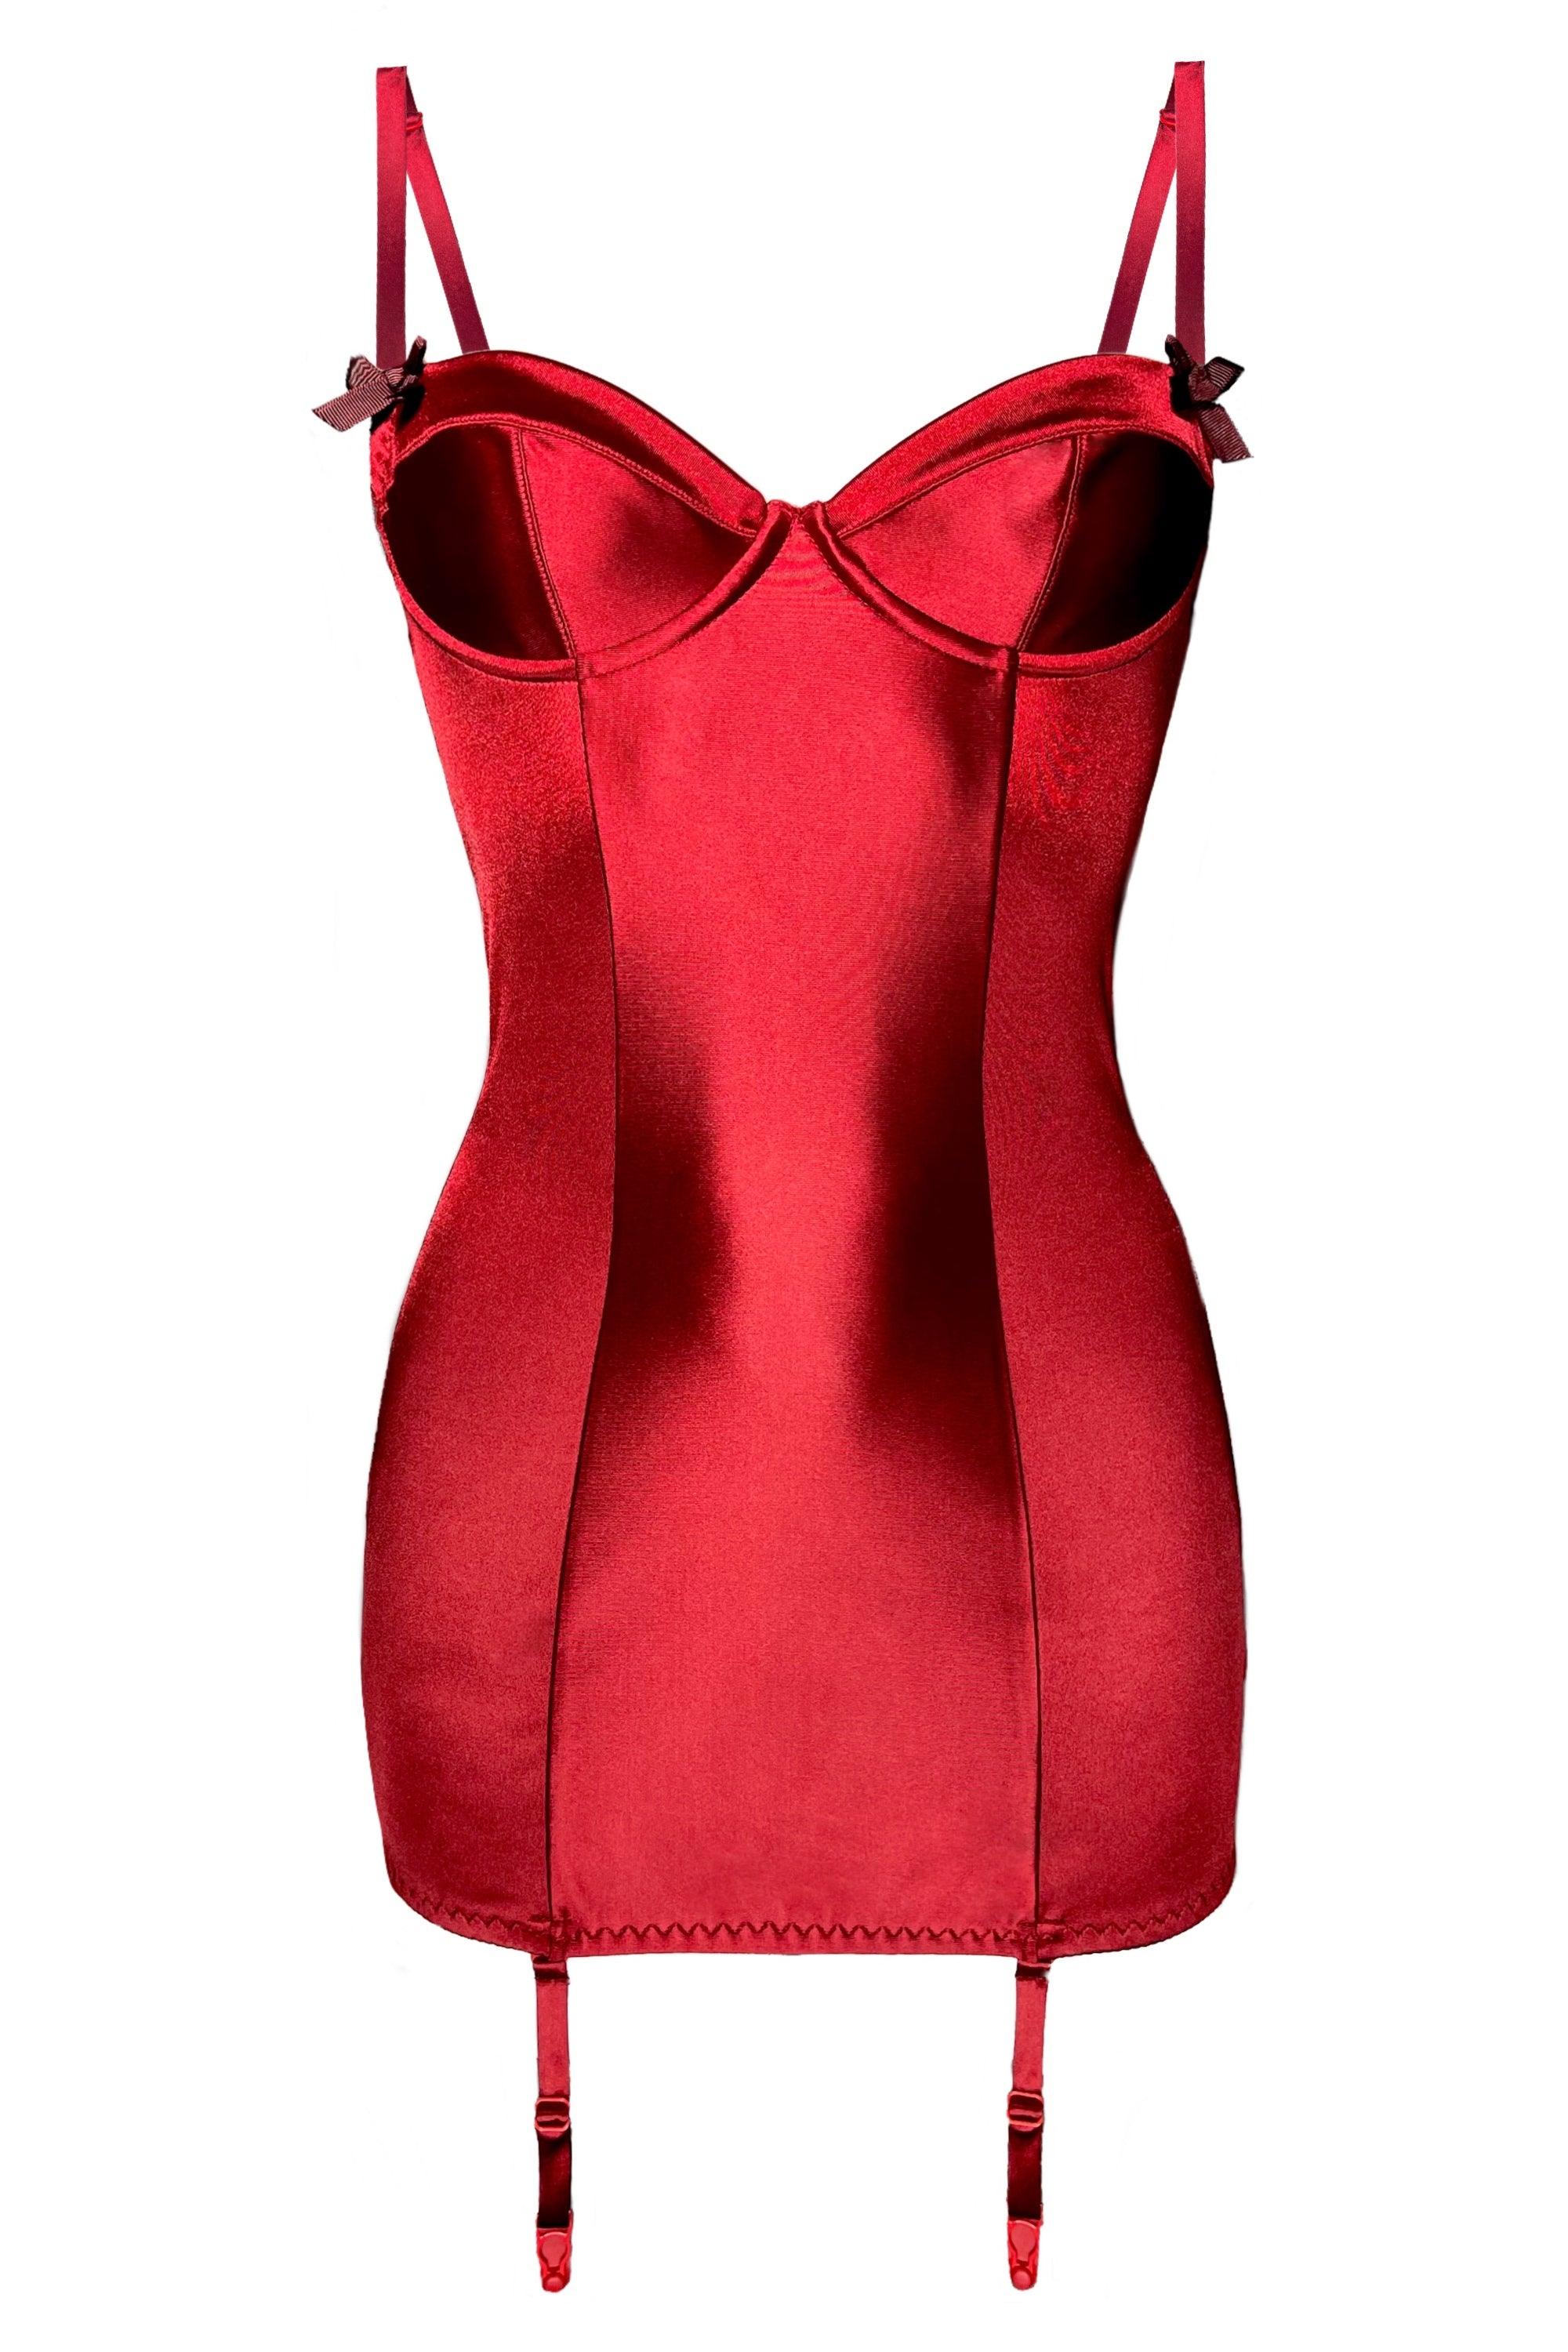 Valessa Gloss Rouge garter dress - yesUndress